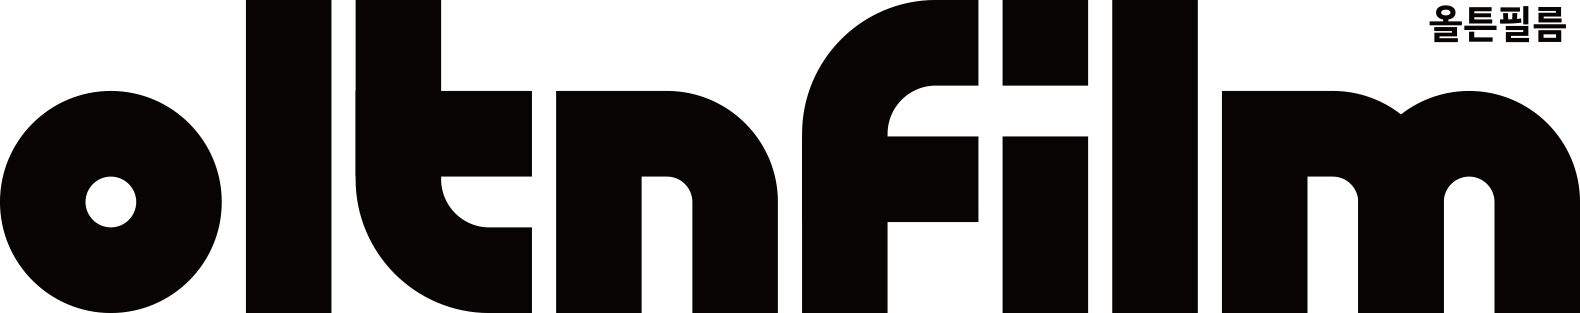 oltn big logo